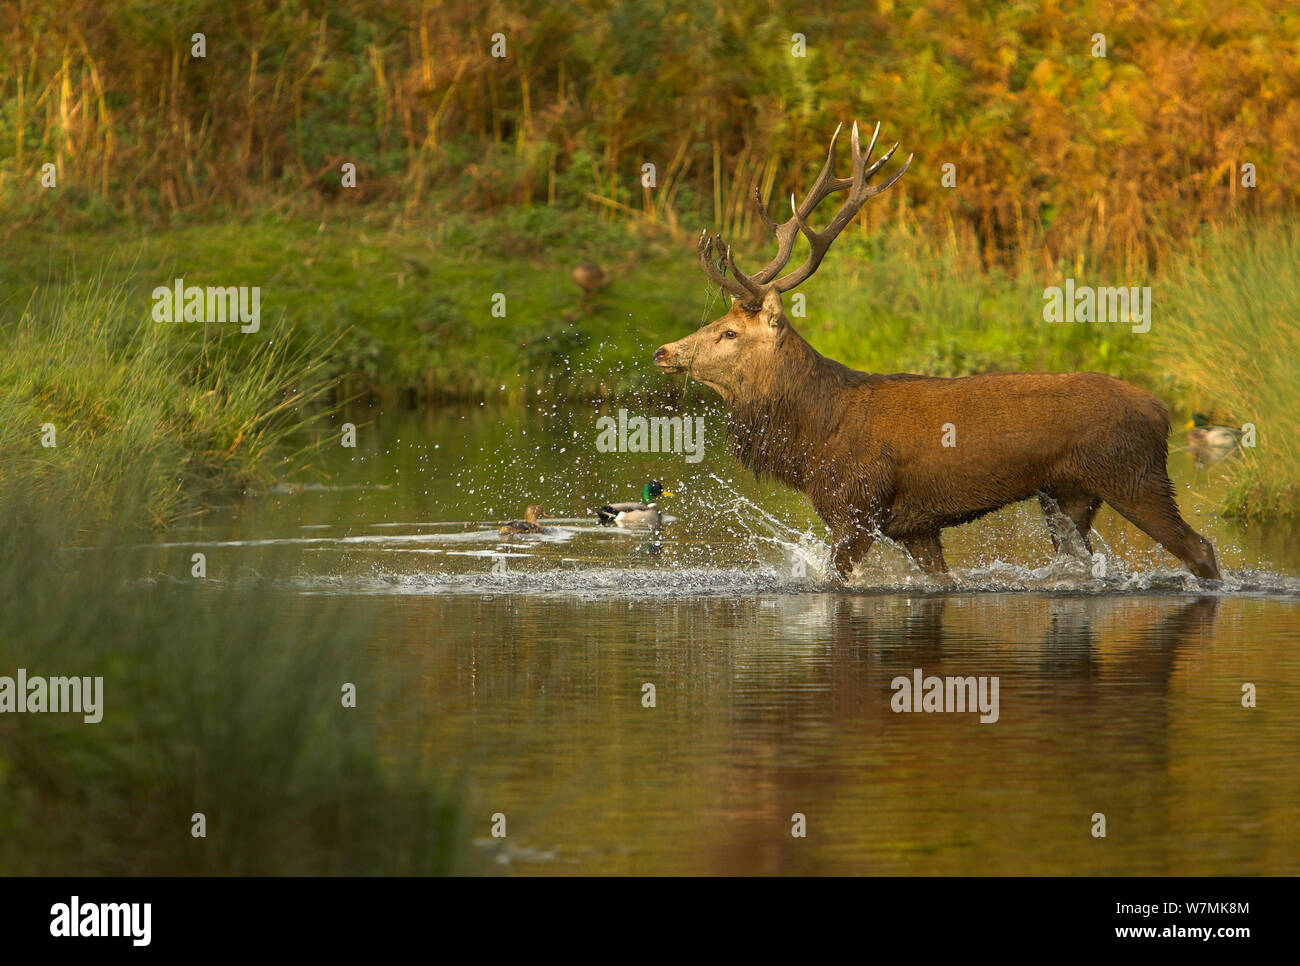 Il cervo (Cervus elaphus) feste di addio al celibato che attraversa un fiume. Glenfield Lodge Park, Leicestershire, Regno Unito, ottobre. Foto Stock